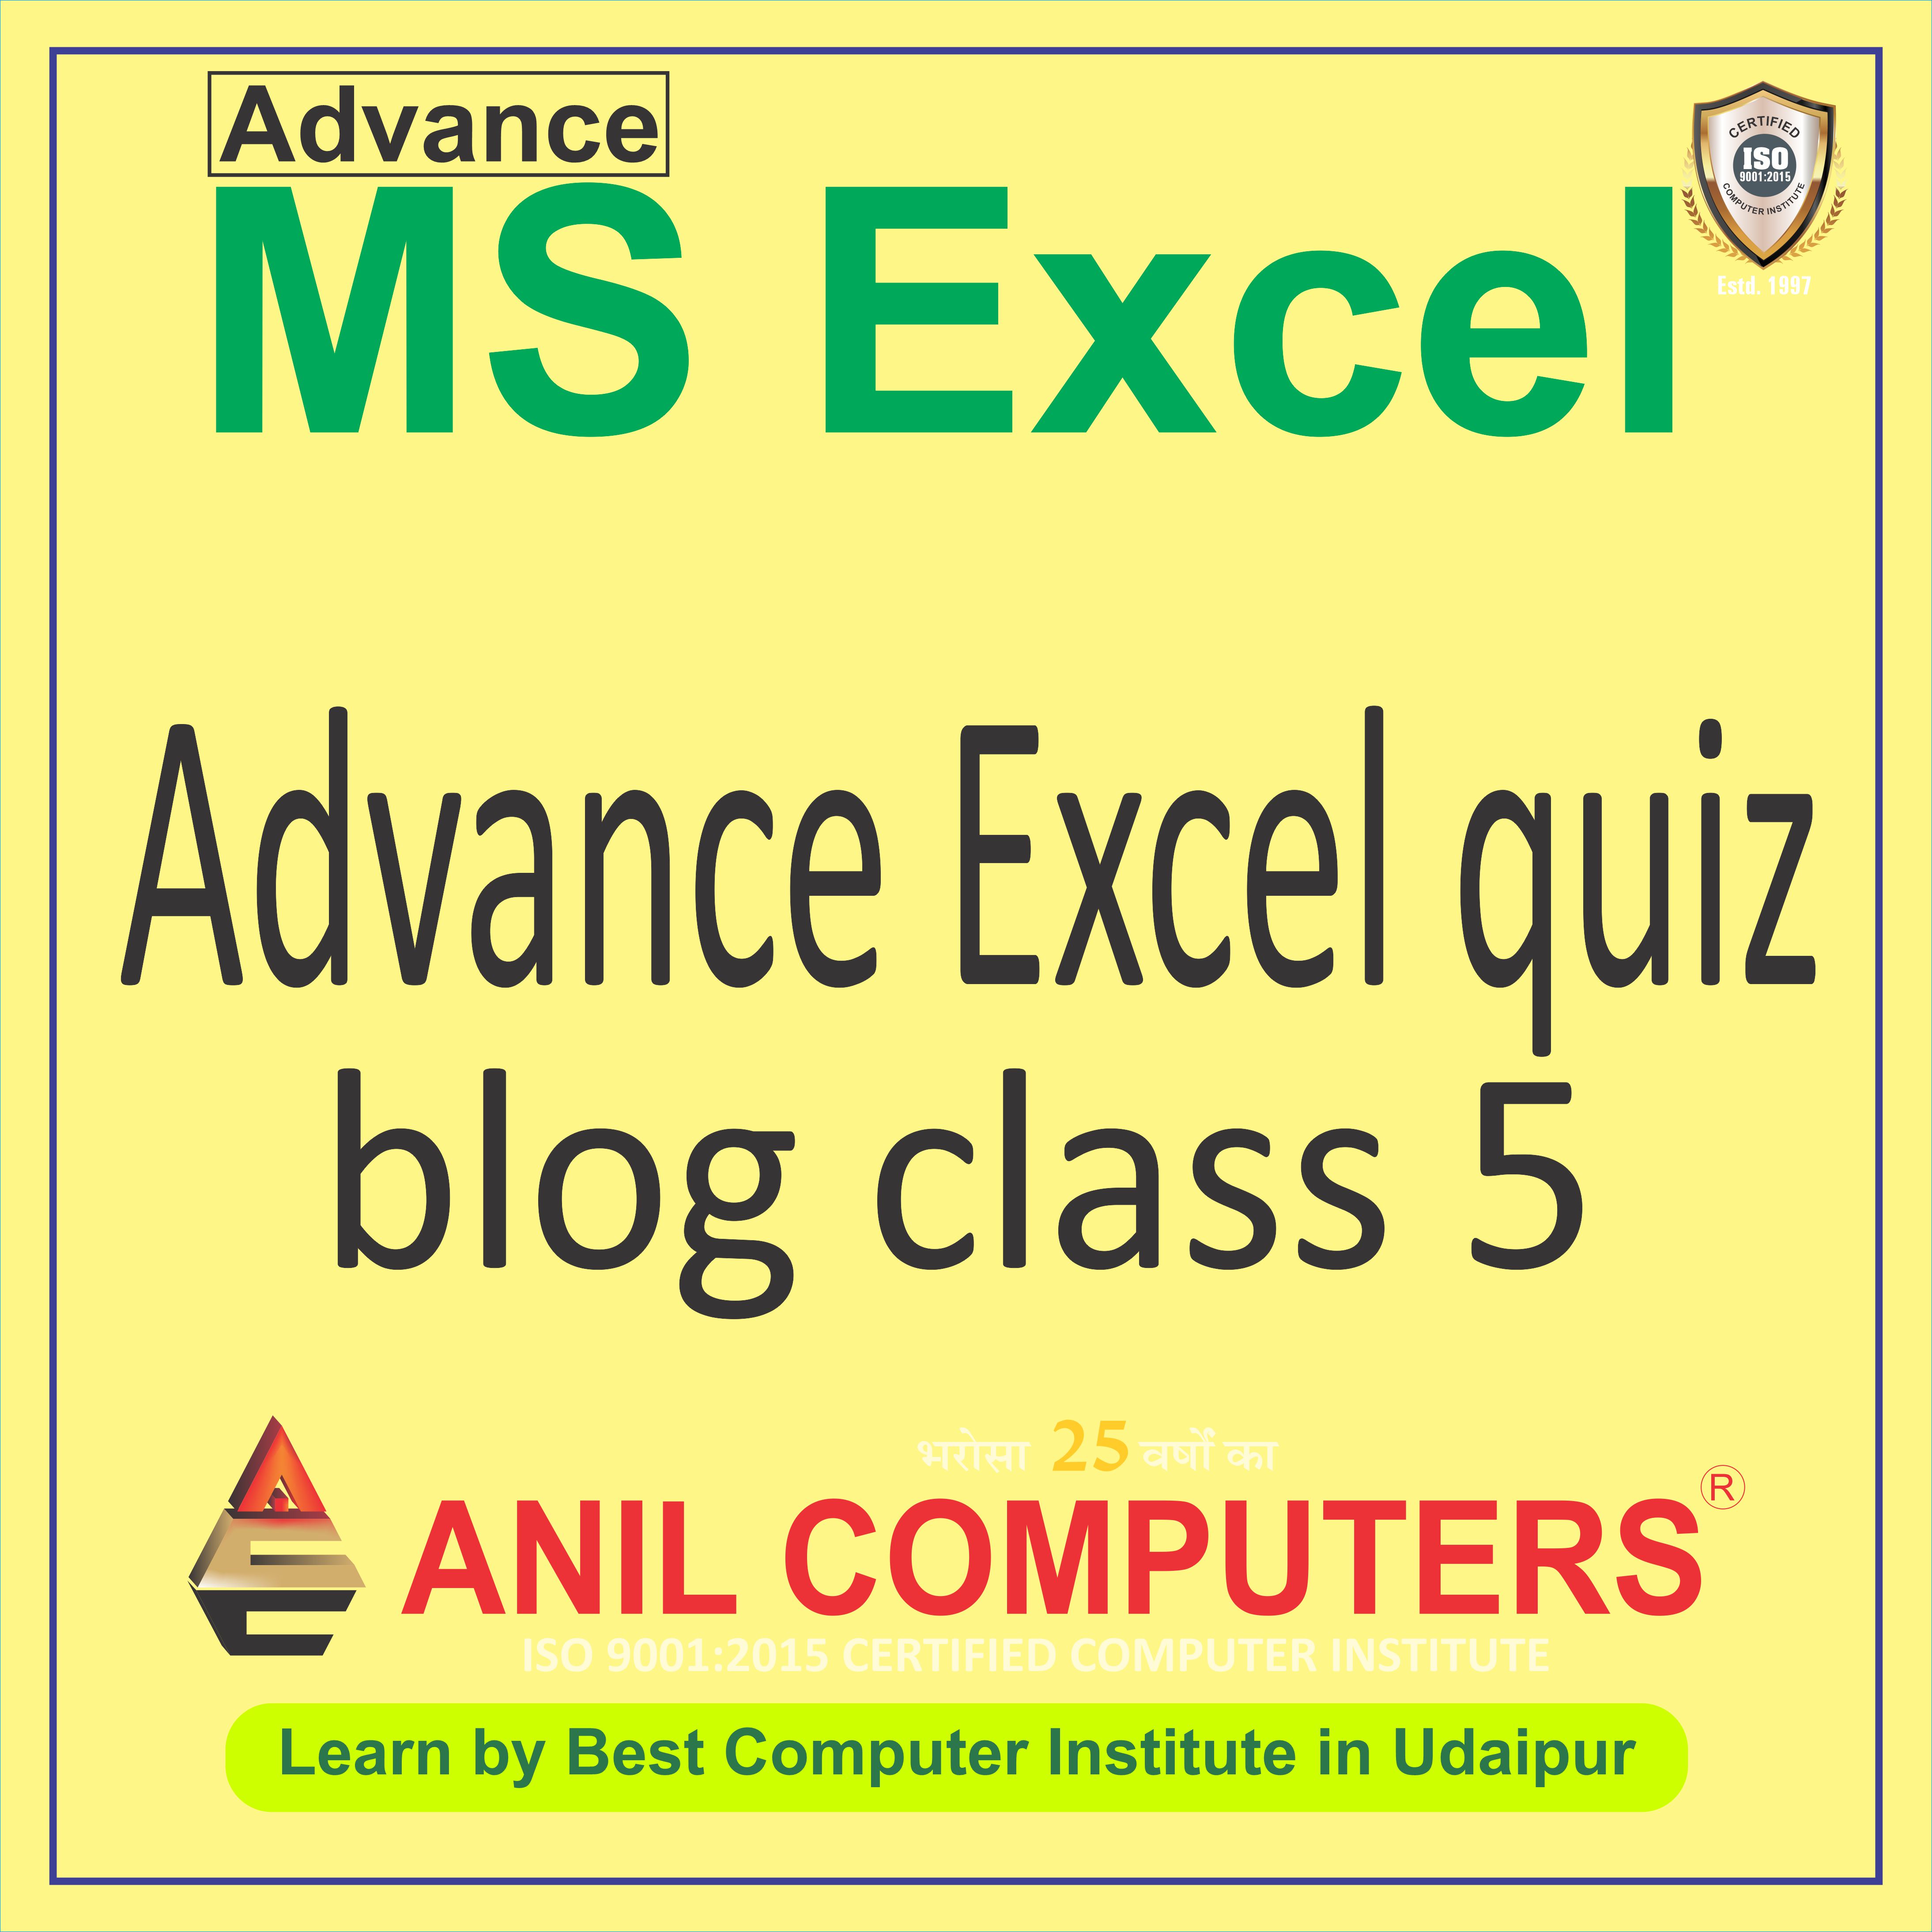 Advance Excel quiz blog clas 5